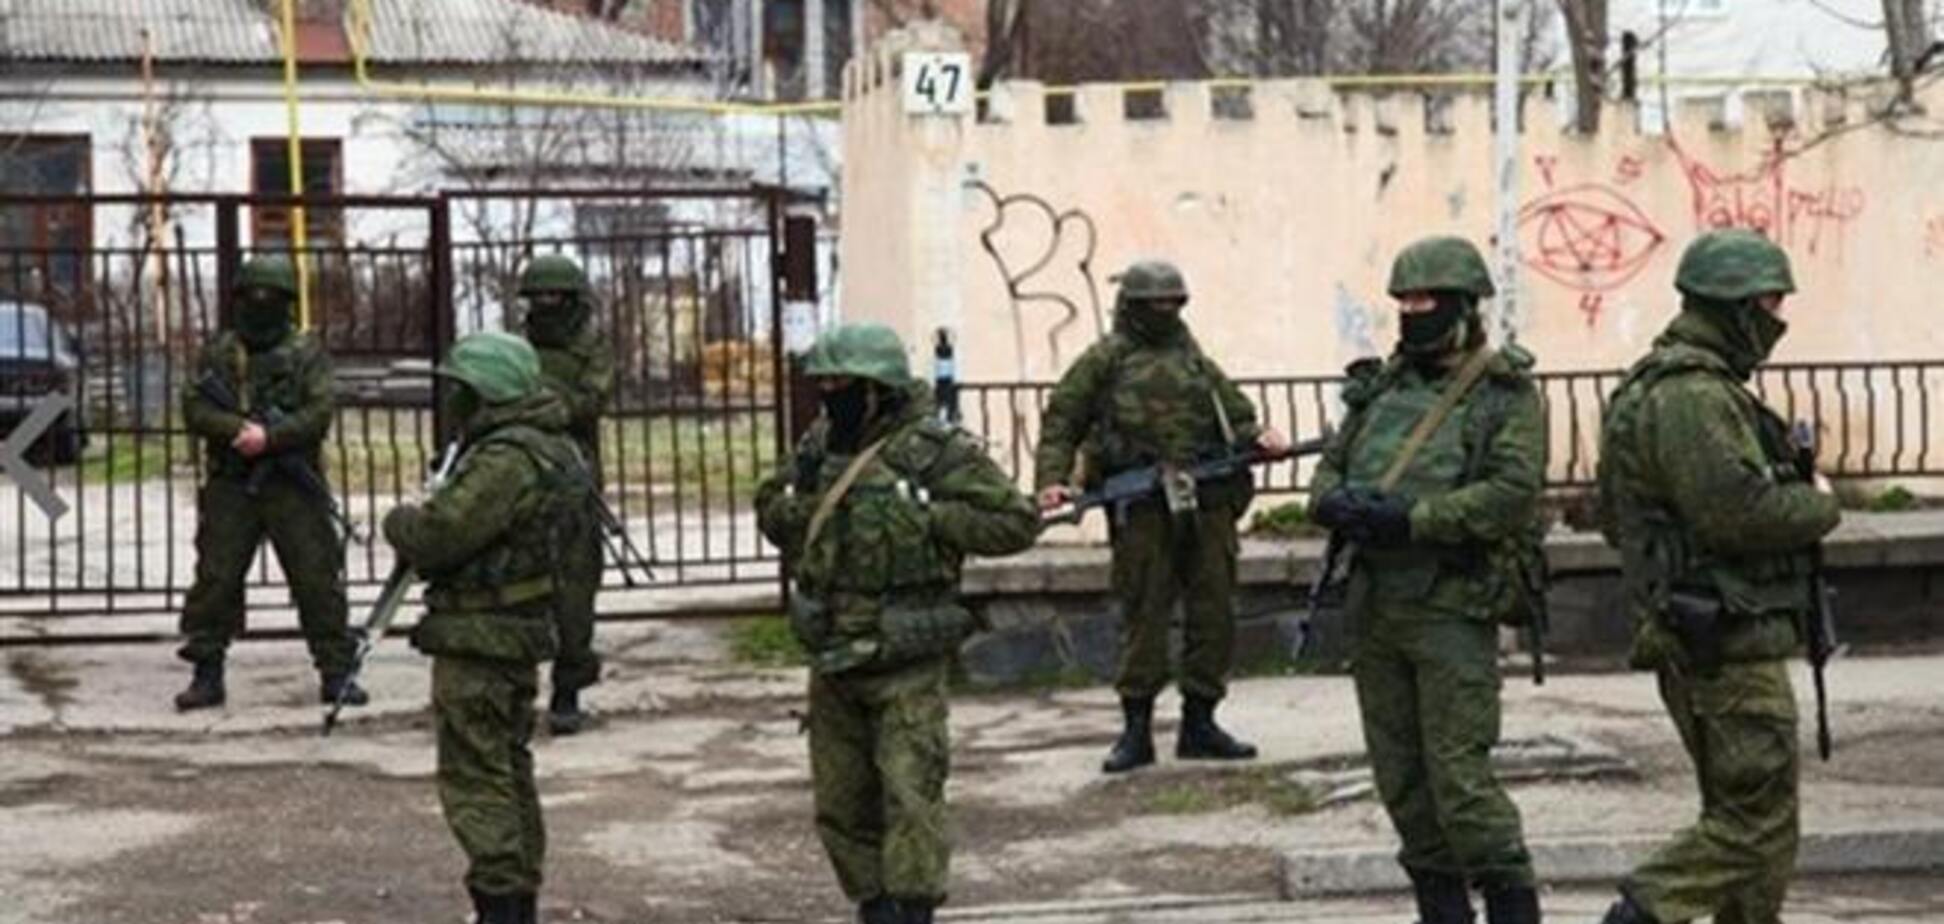 Штаб ВМС Украины в Севастополе по-прежнему заблокирован